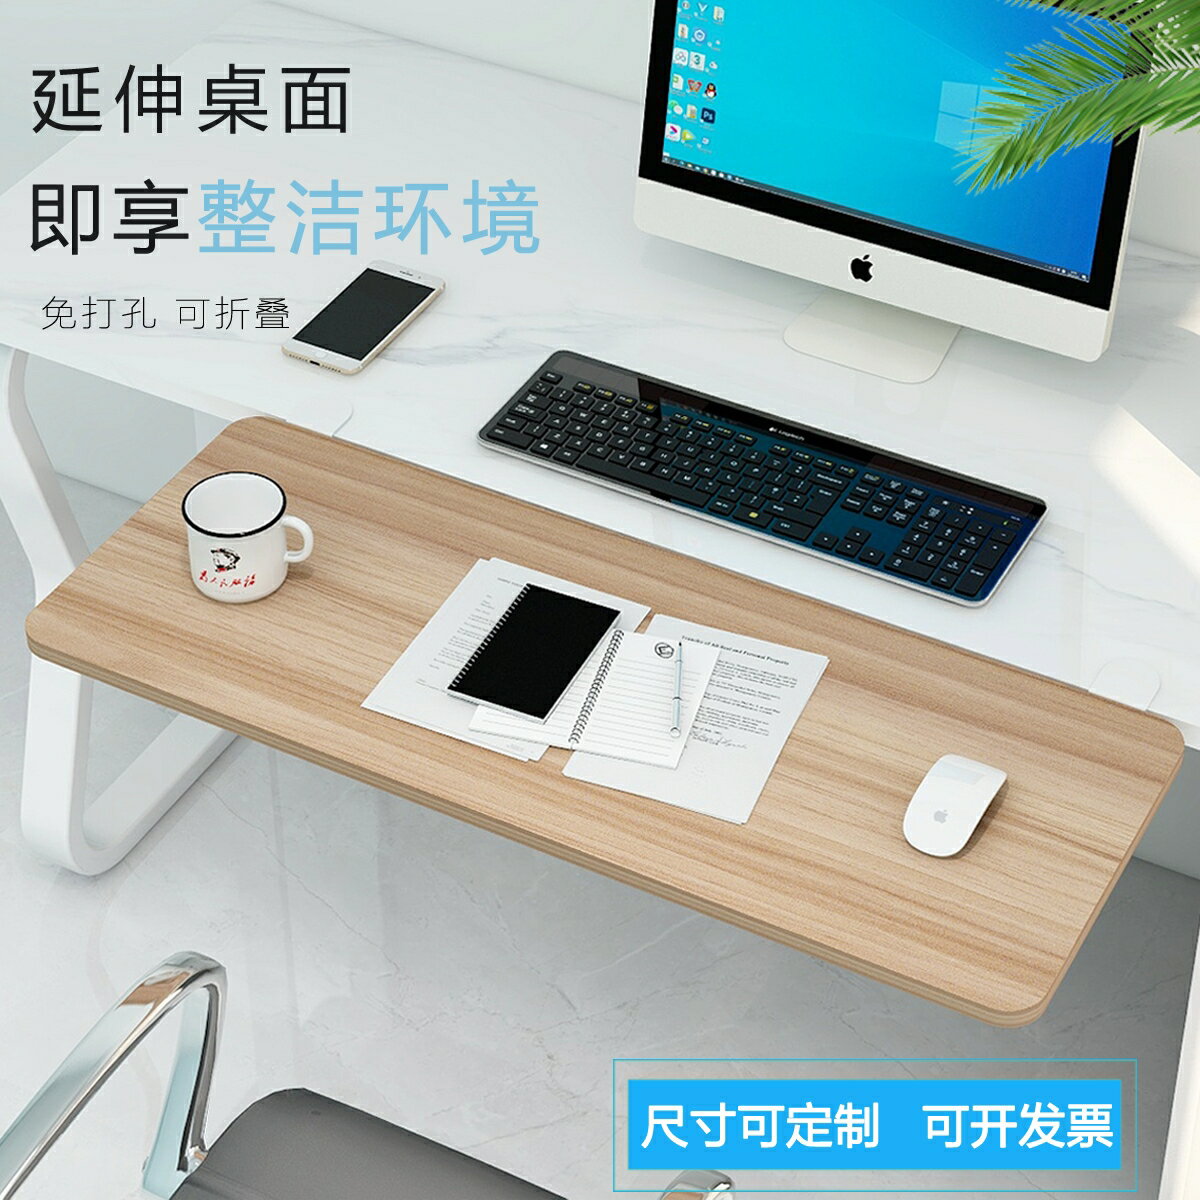 桌面延長板 手托架 桌面延長板加長免打孔鍵盤手托電腦桌子延伸板加寬接板支撐板定制